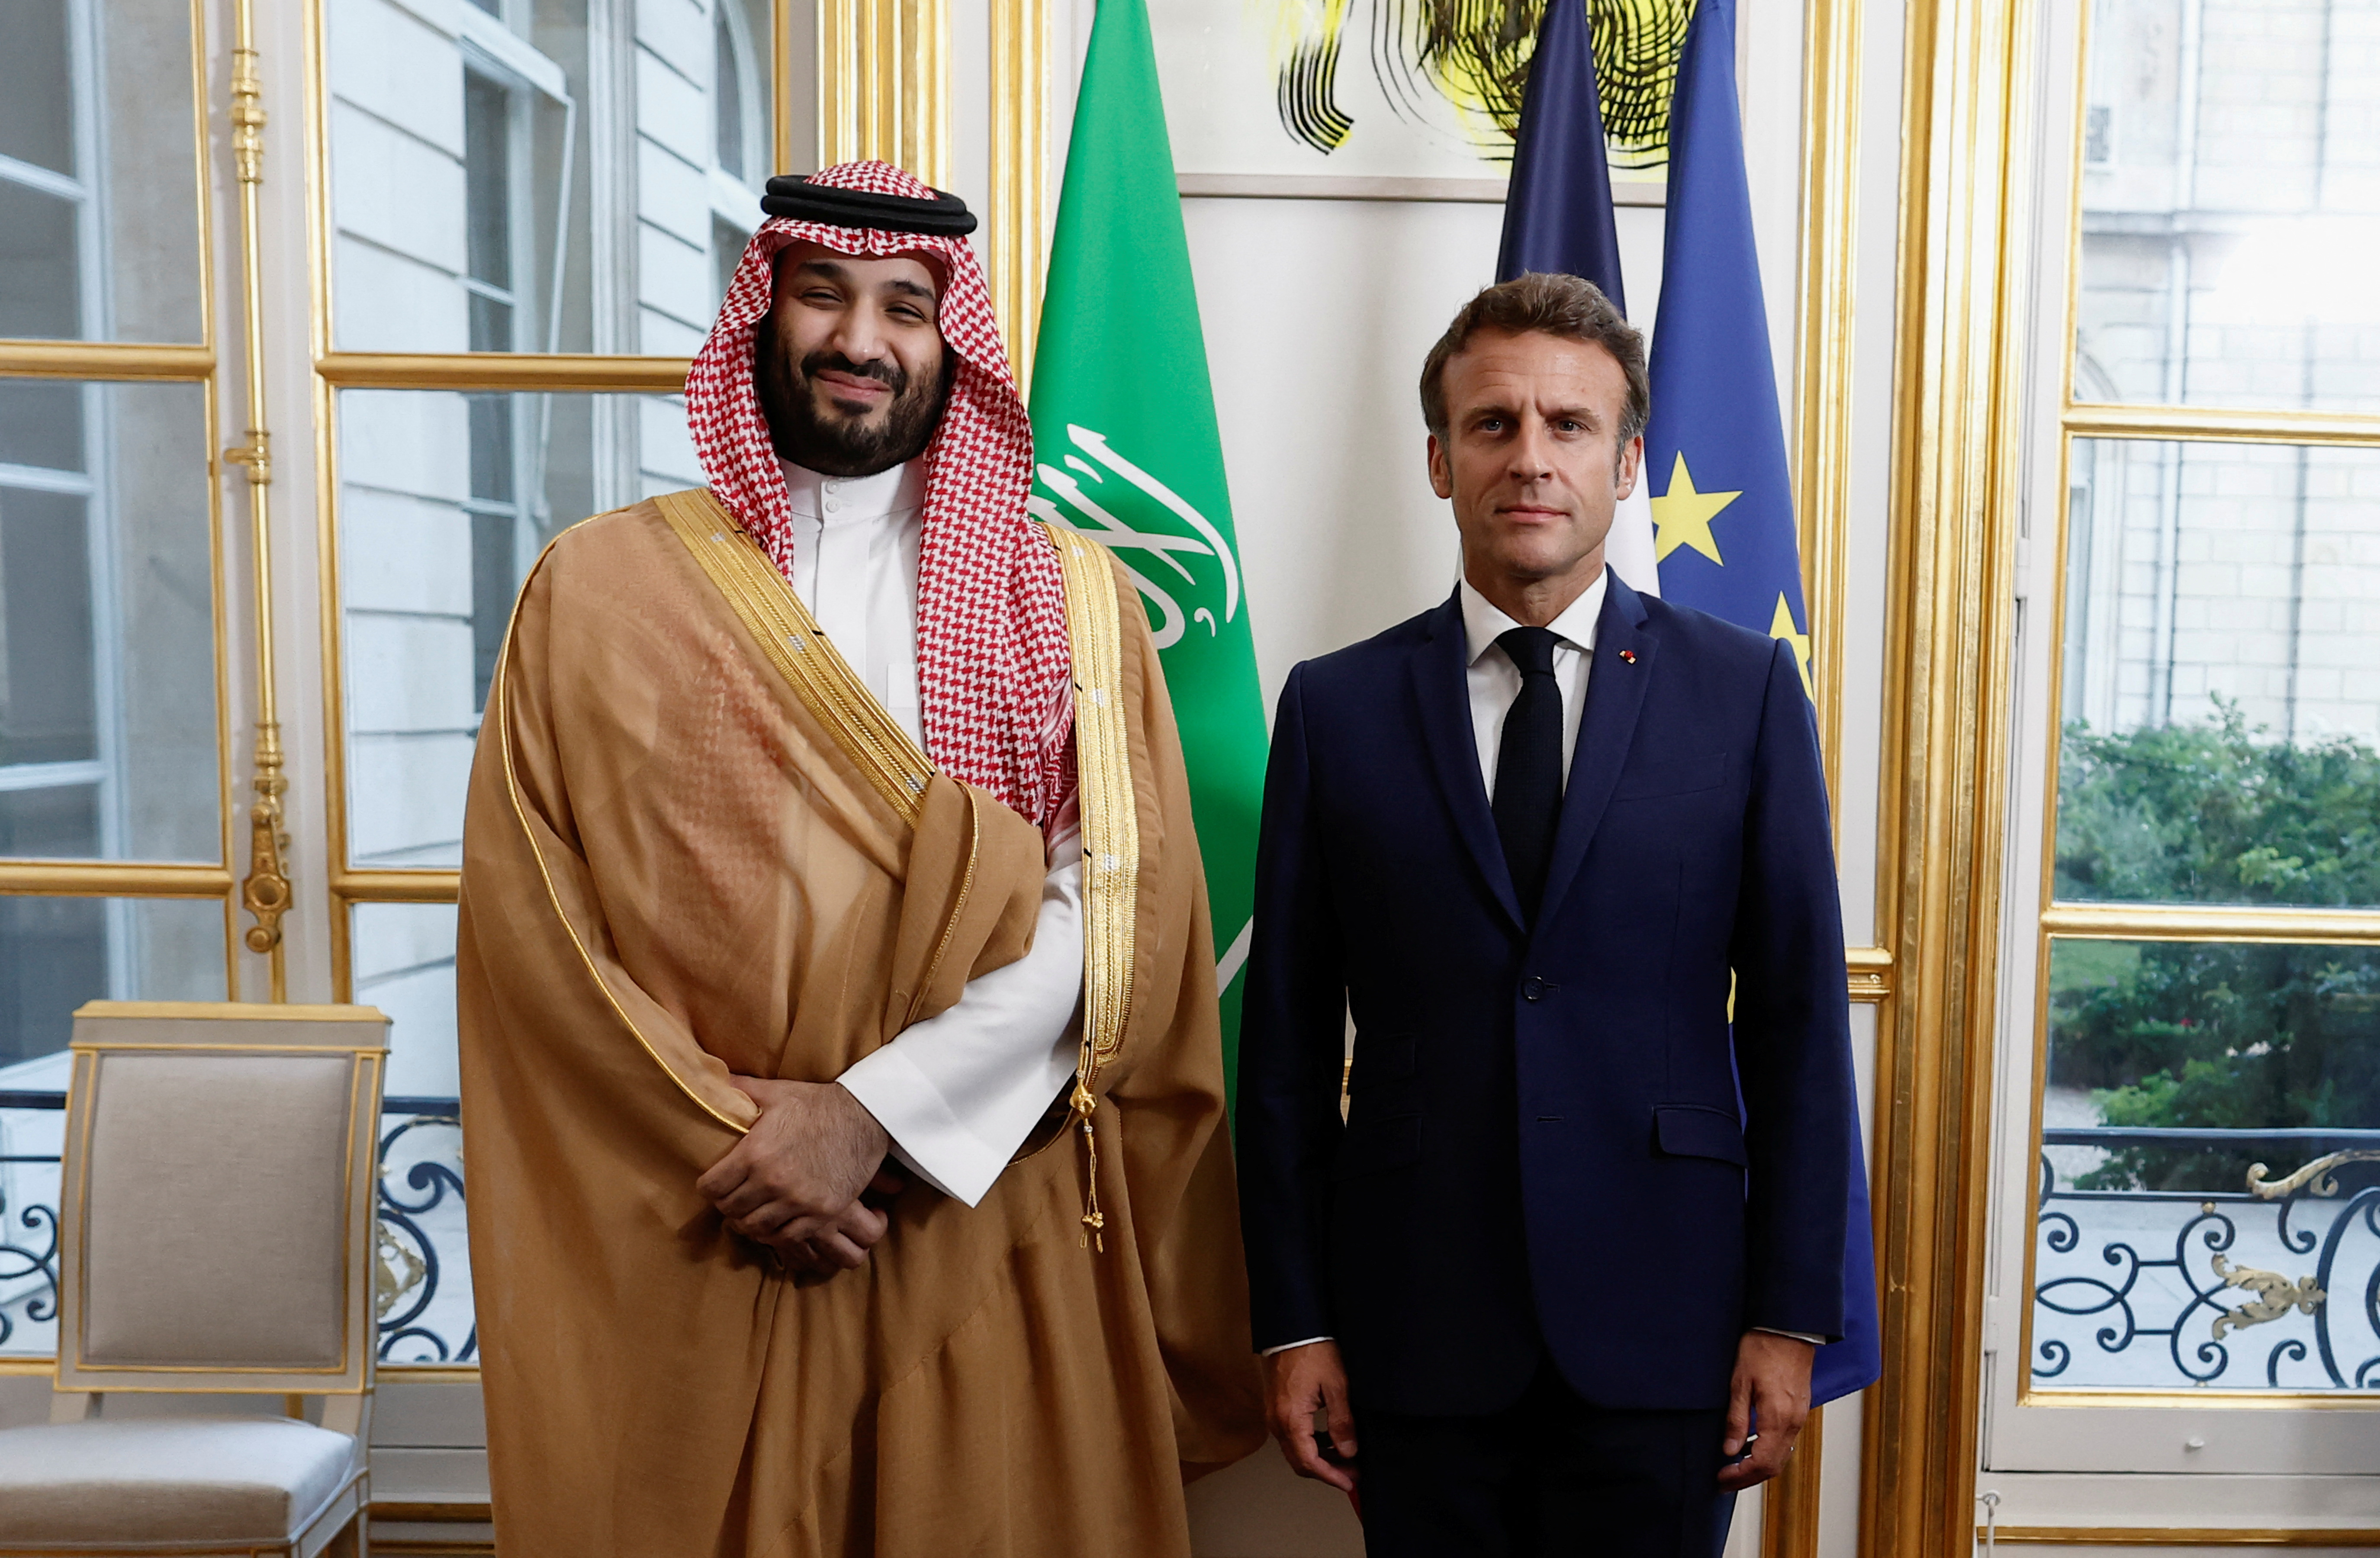 El presidente francés, Emmanuel Macron, se reúne con el príncipe heredero de Arabia Saudita, Mohammed bin Salman, antes de una cena de trabajo en el Palacio del Elíseo en París, Francia, el 28 de julio de 2022. REUTERS/Benoit Tessier